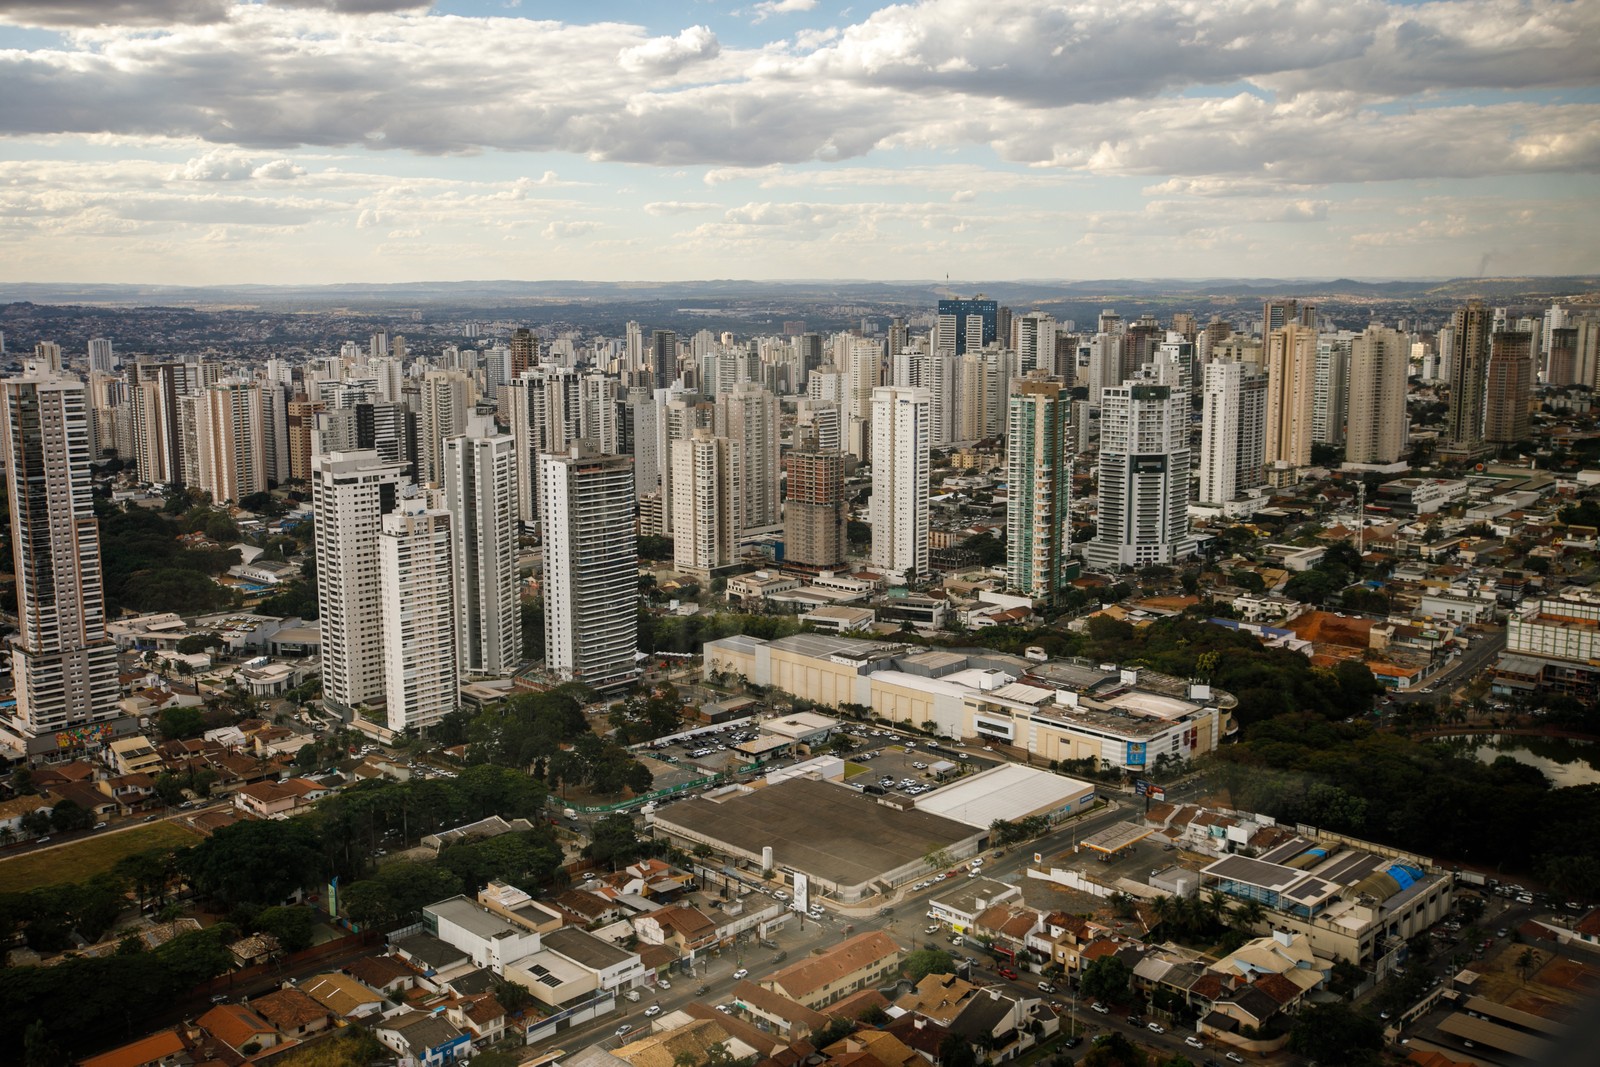  O Censo Demográfico 2022, divulgado pelo Instituto Brasileiro de Geografia e Estatística (IBGE), mostrou que a concentração urbana da Grande Goiânia foi a que mais cresceu no país nos últimos 12 anos. A região teve um salto de 18,9% desde o último levantamento, em 2010. — Foto: Brenno Carvalho / Agência O Globo